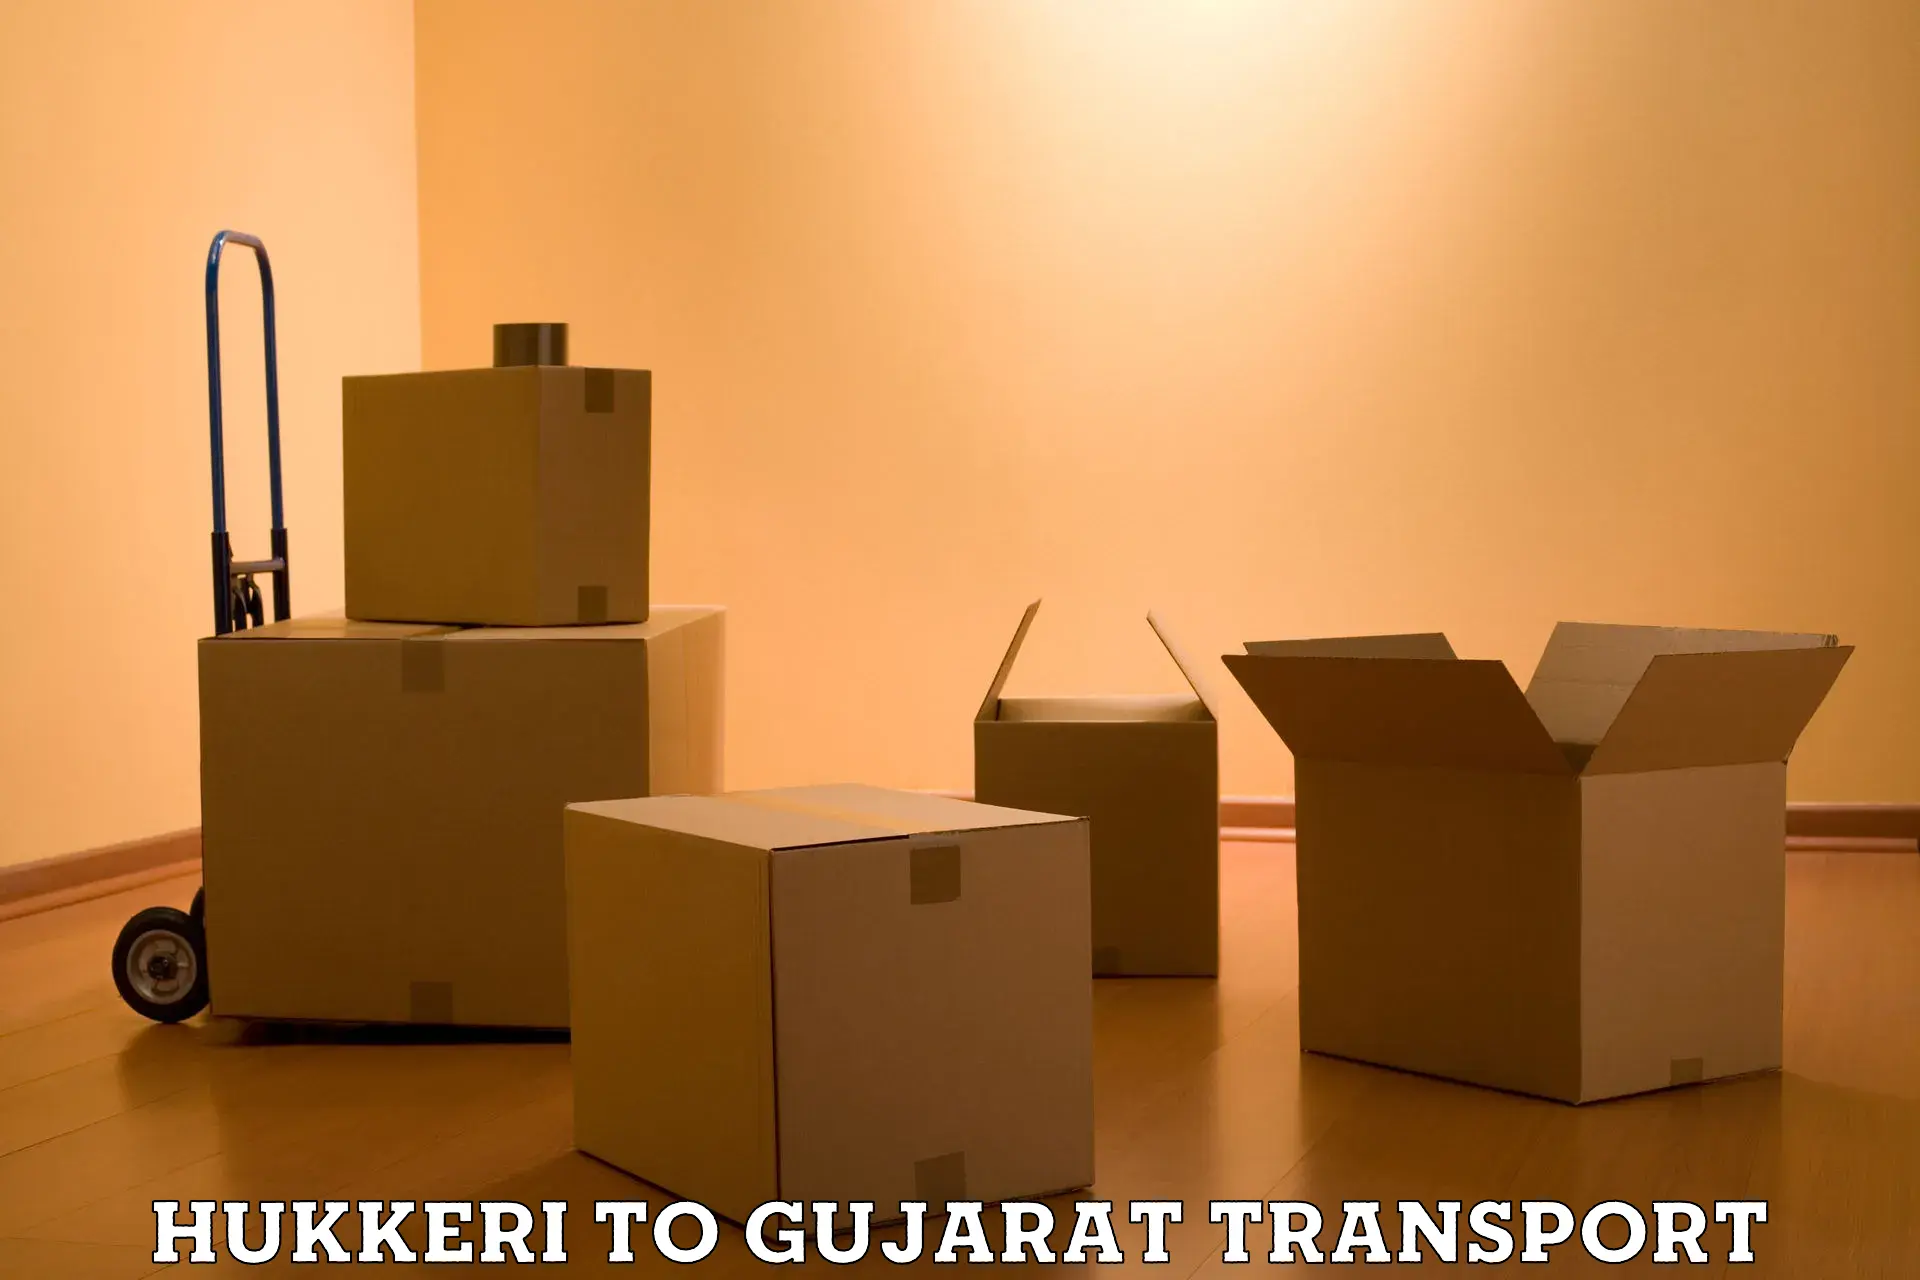 Interstate transport services Hukkeri to Gandhinagar